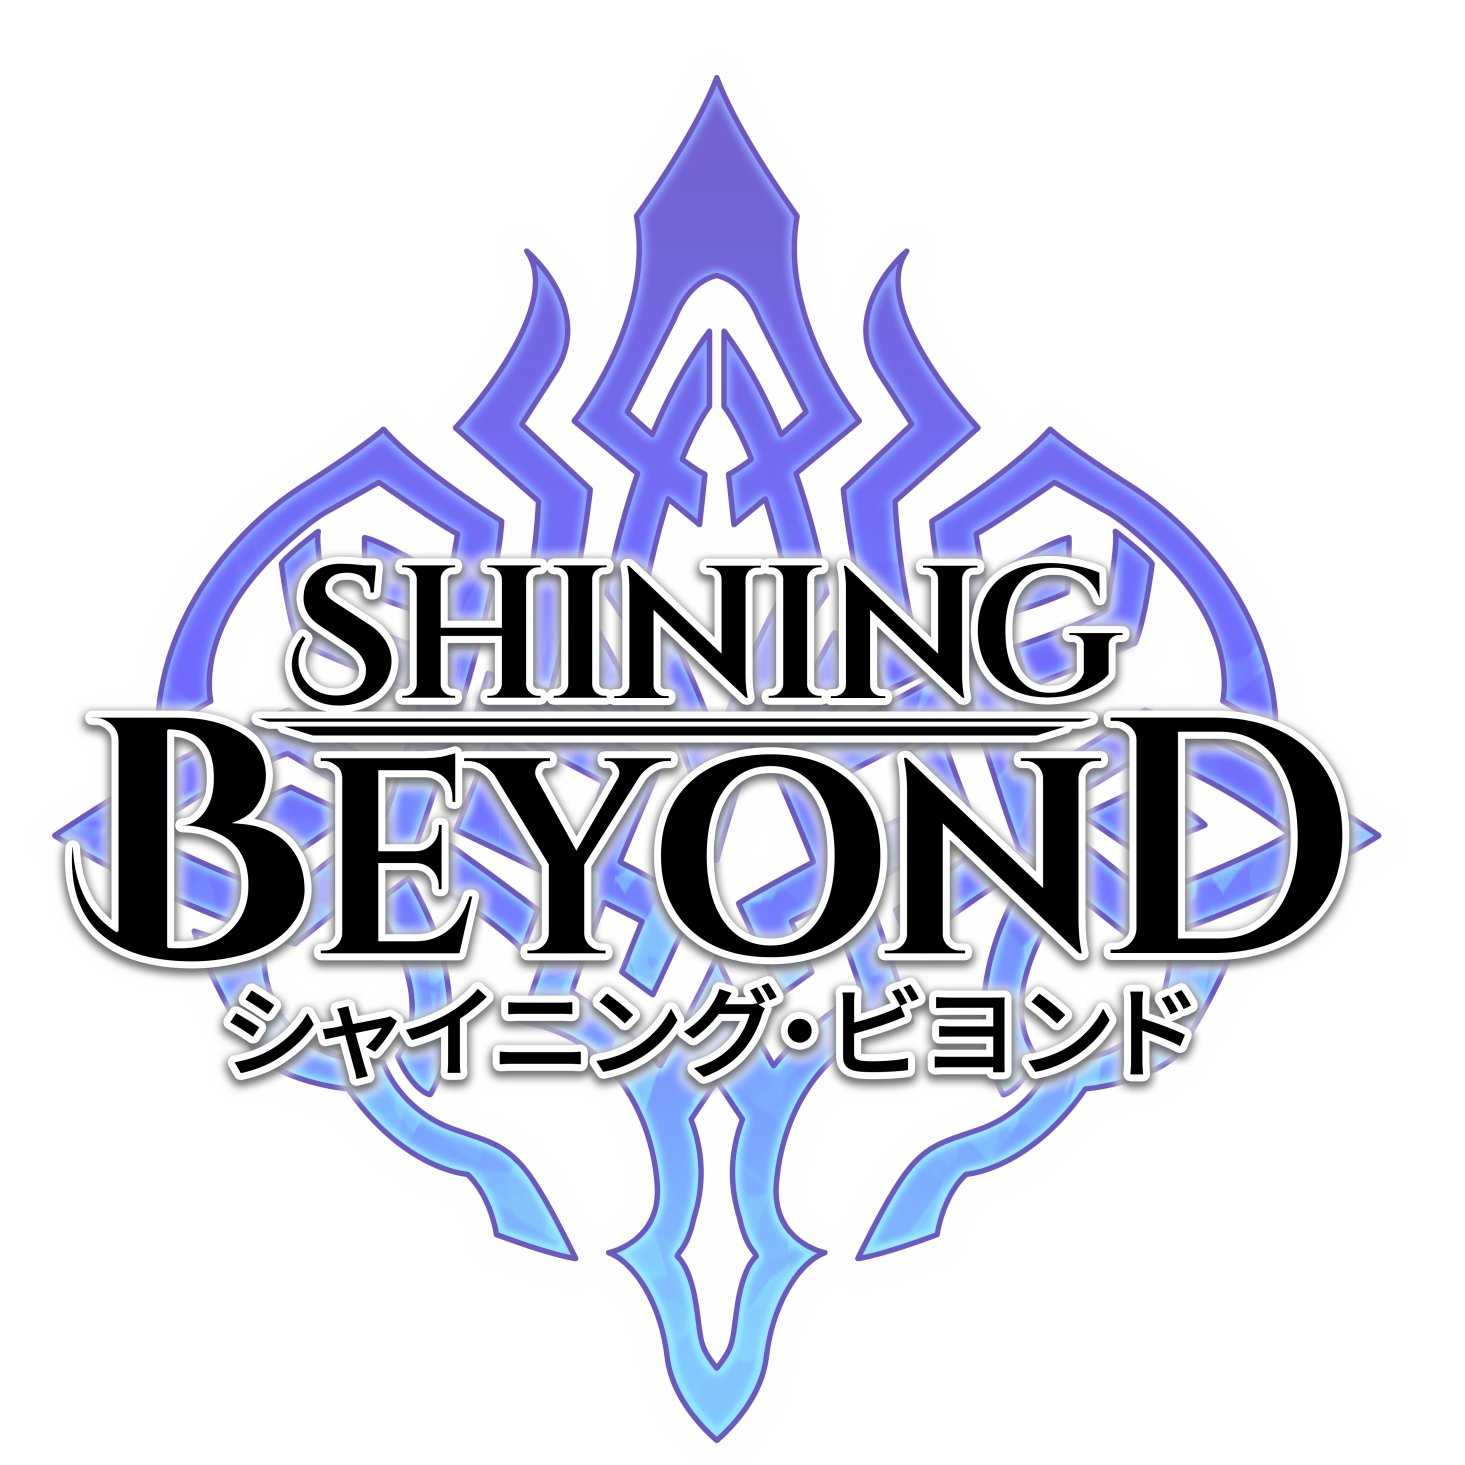 Shining Beyond